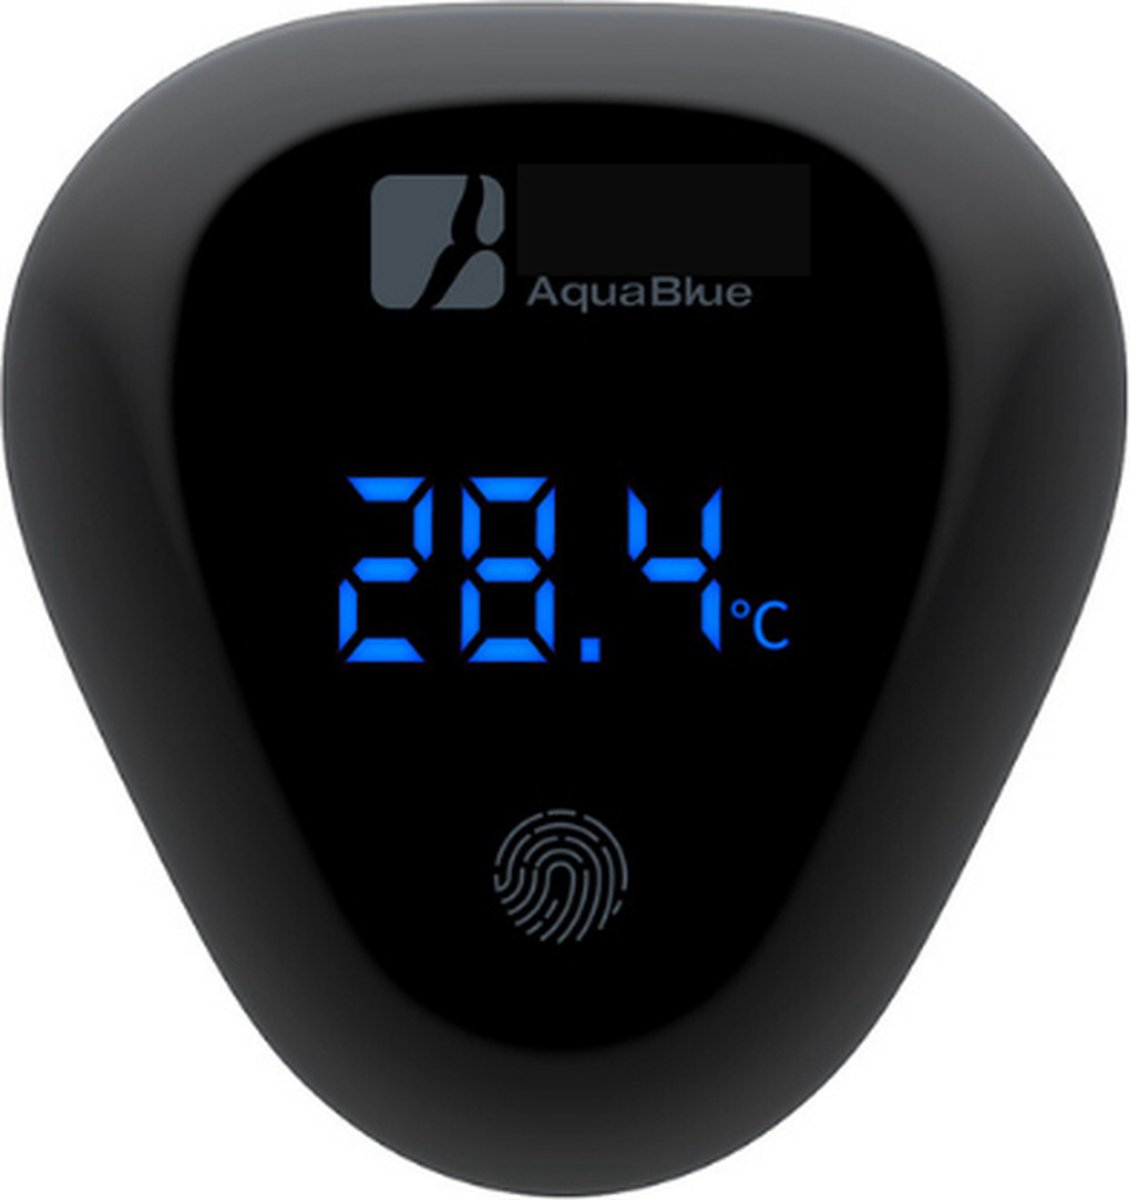 Aquariummeter - Thermometer aquarium - Digitale thermometer - Aquarium thermometer strip - Digitaal water meten aquarium - Grootglas thermometer - Doorschijnende thermometer aquarium - Merkloos